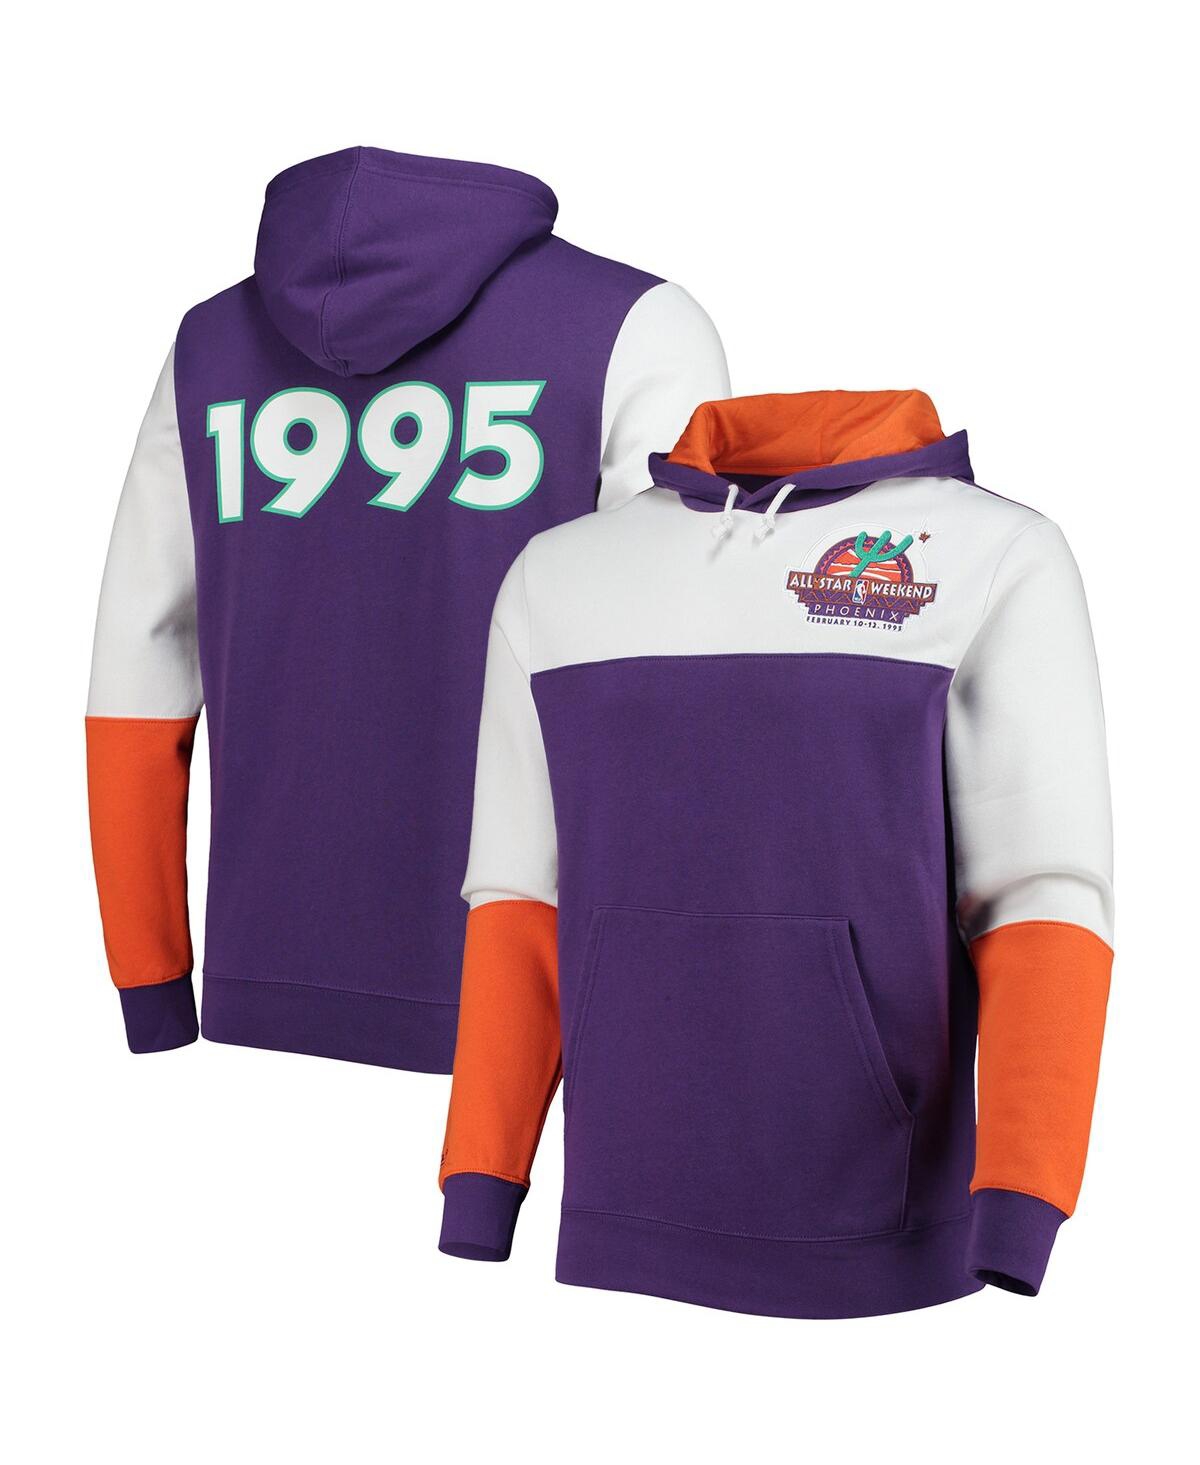 Milwaukee Bucks Hoodie  Mitchell & Ness Purple Retro Classic NBA Hooded  Sweatshirt